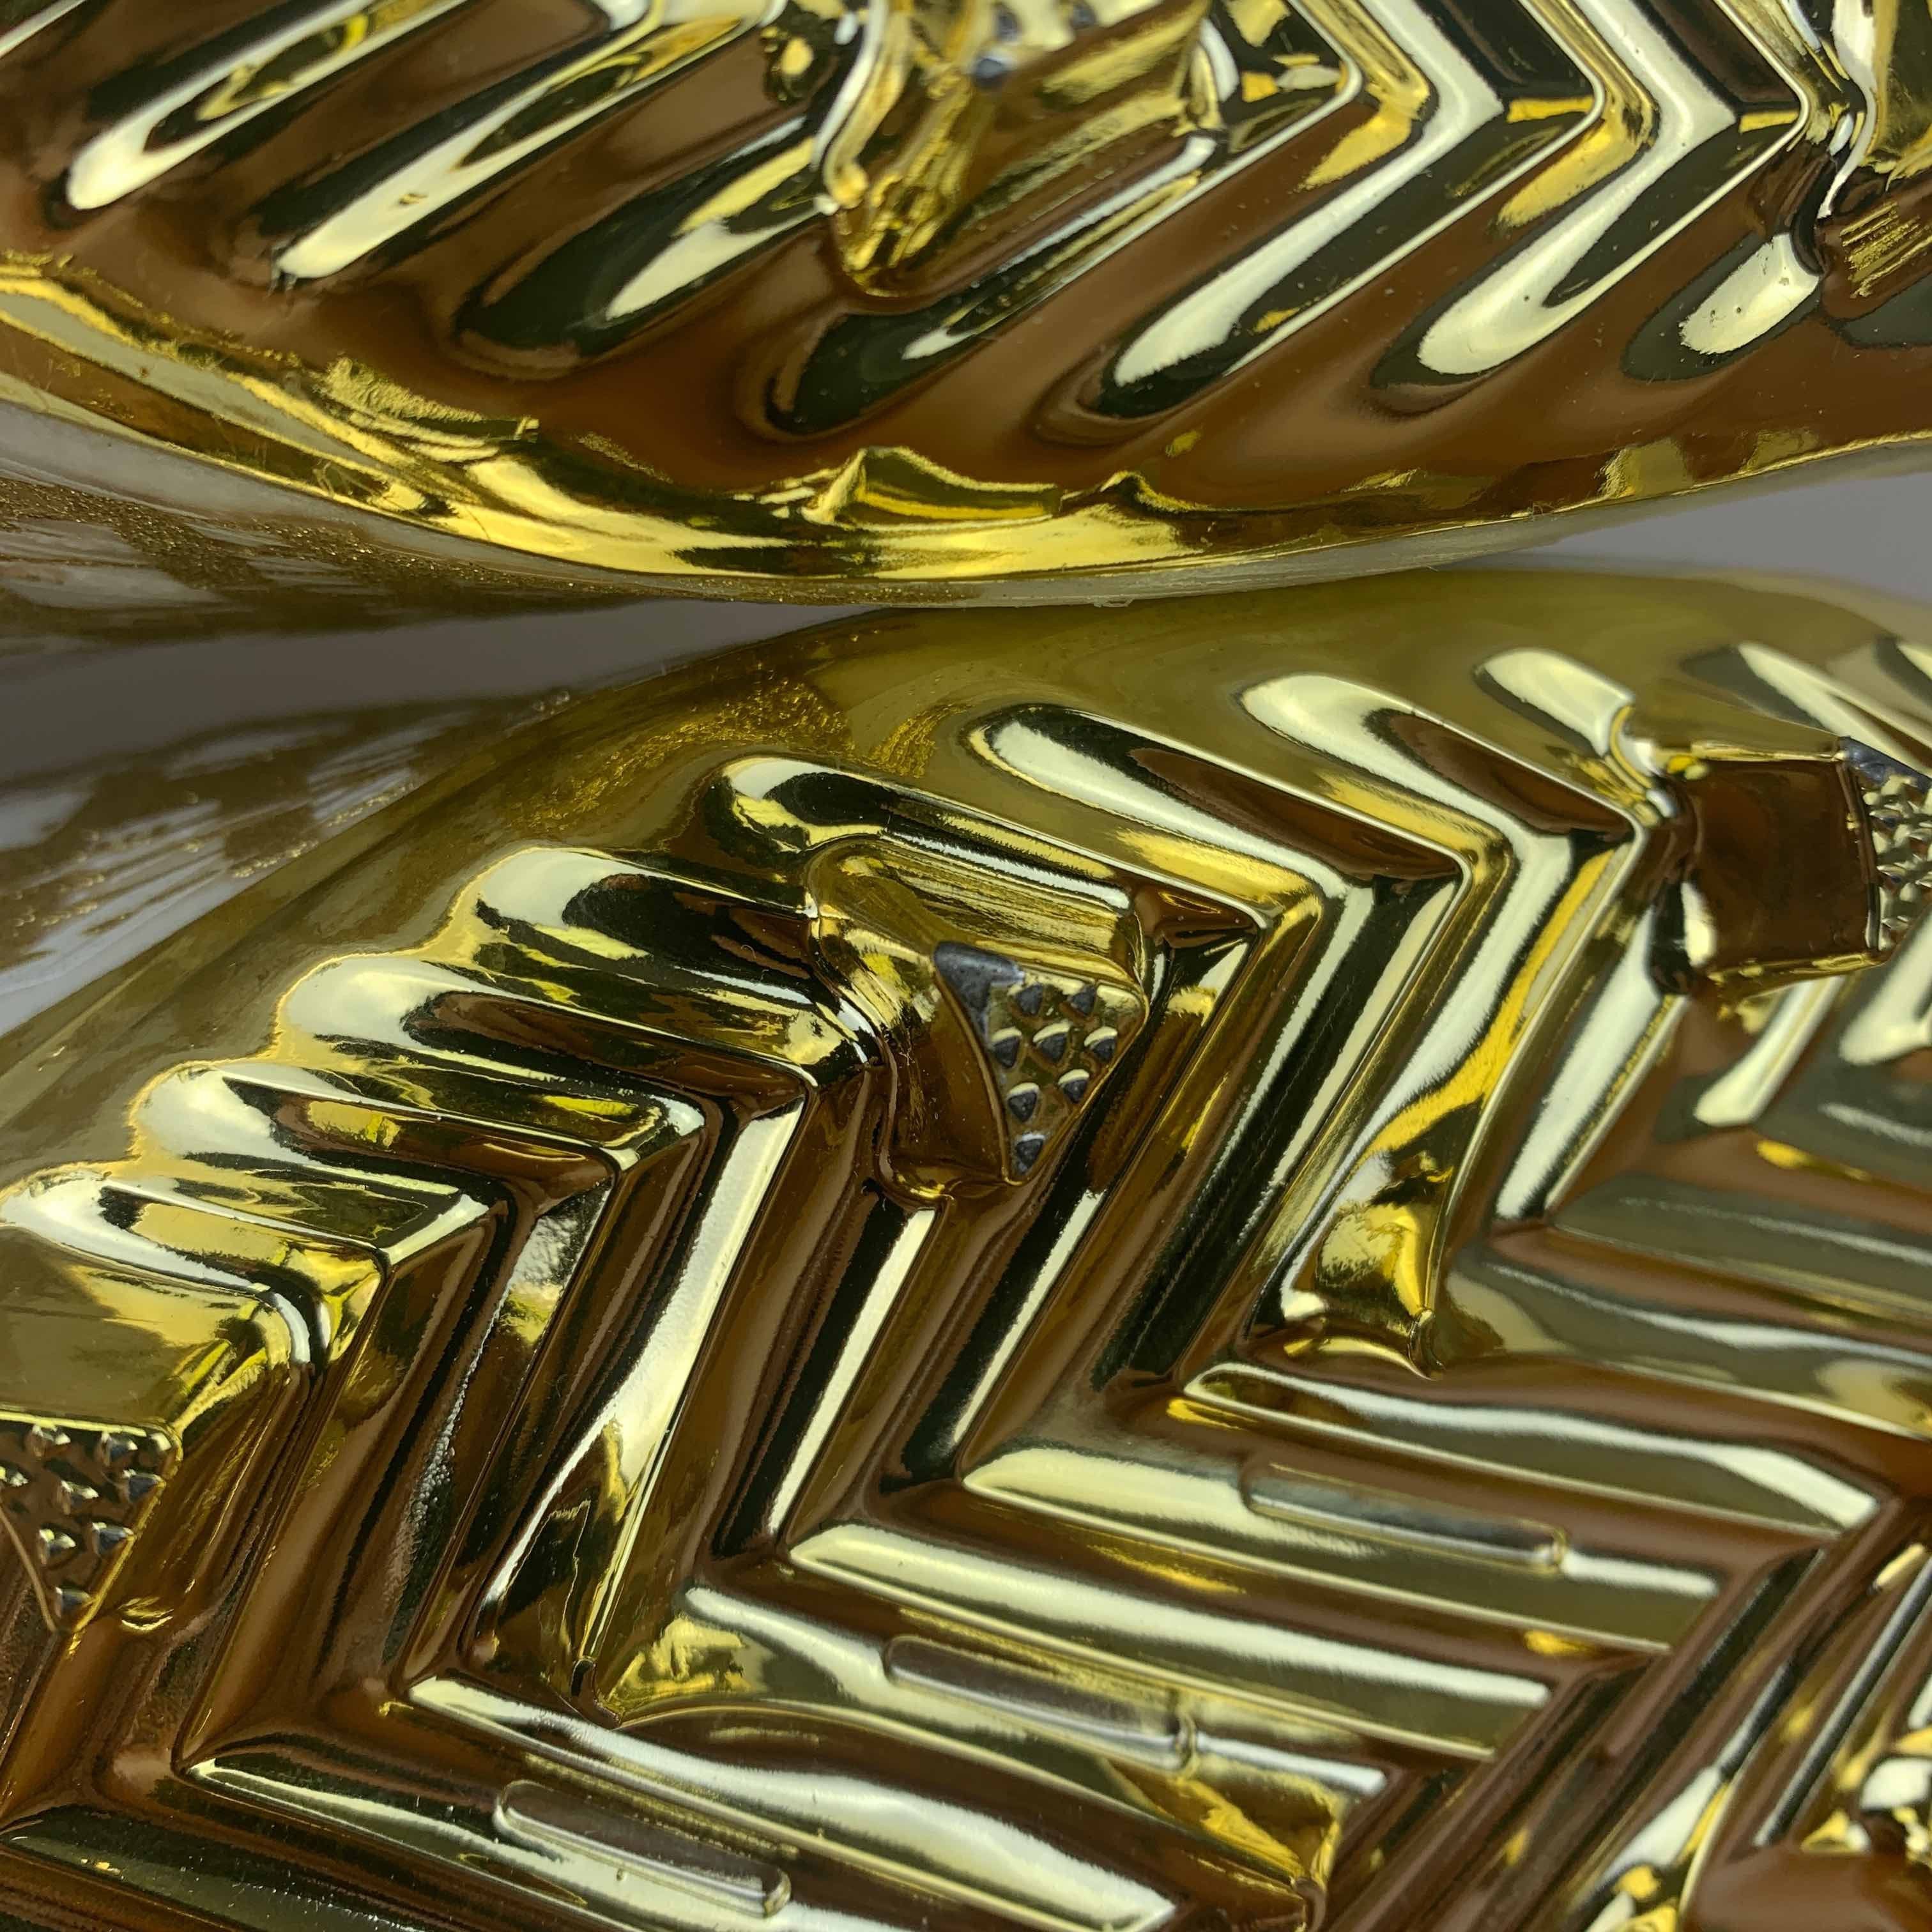 Adidas Adizero Cleats Primeknit White Gold Metallic Size US 12 / EU 45 - 8 Thumbnail